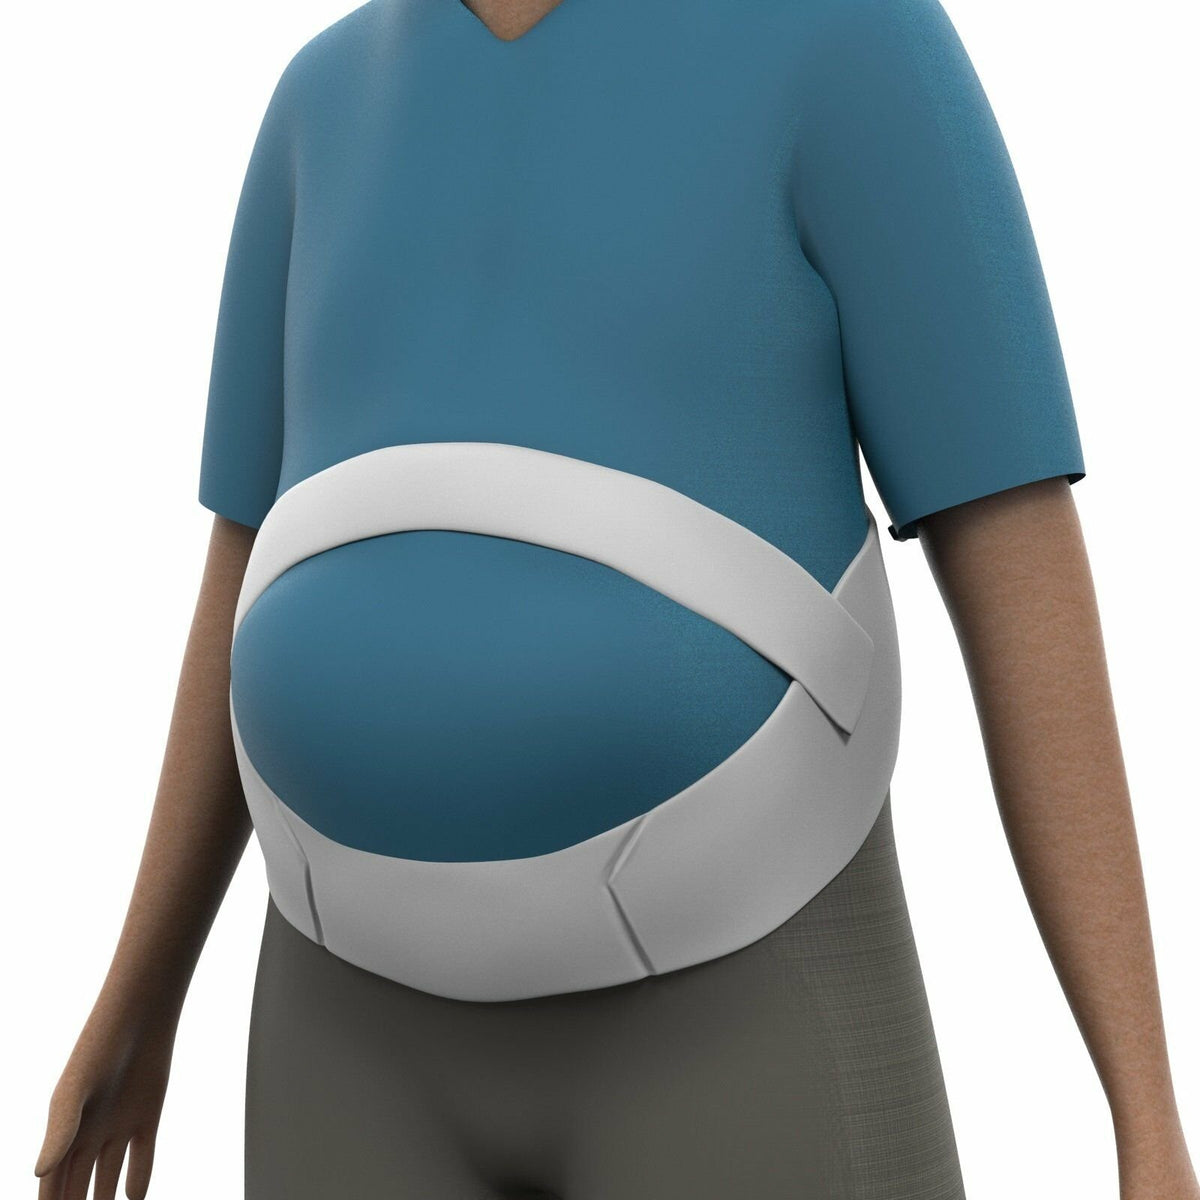 Obesity Belt - Belly Holder Abdominal Binder and Lower Back Support - 2XL - Mars Med Supply